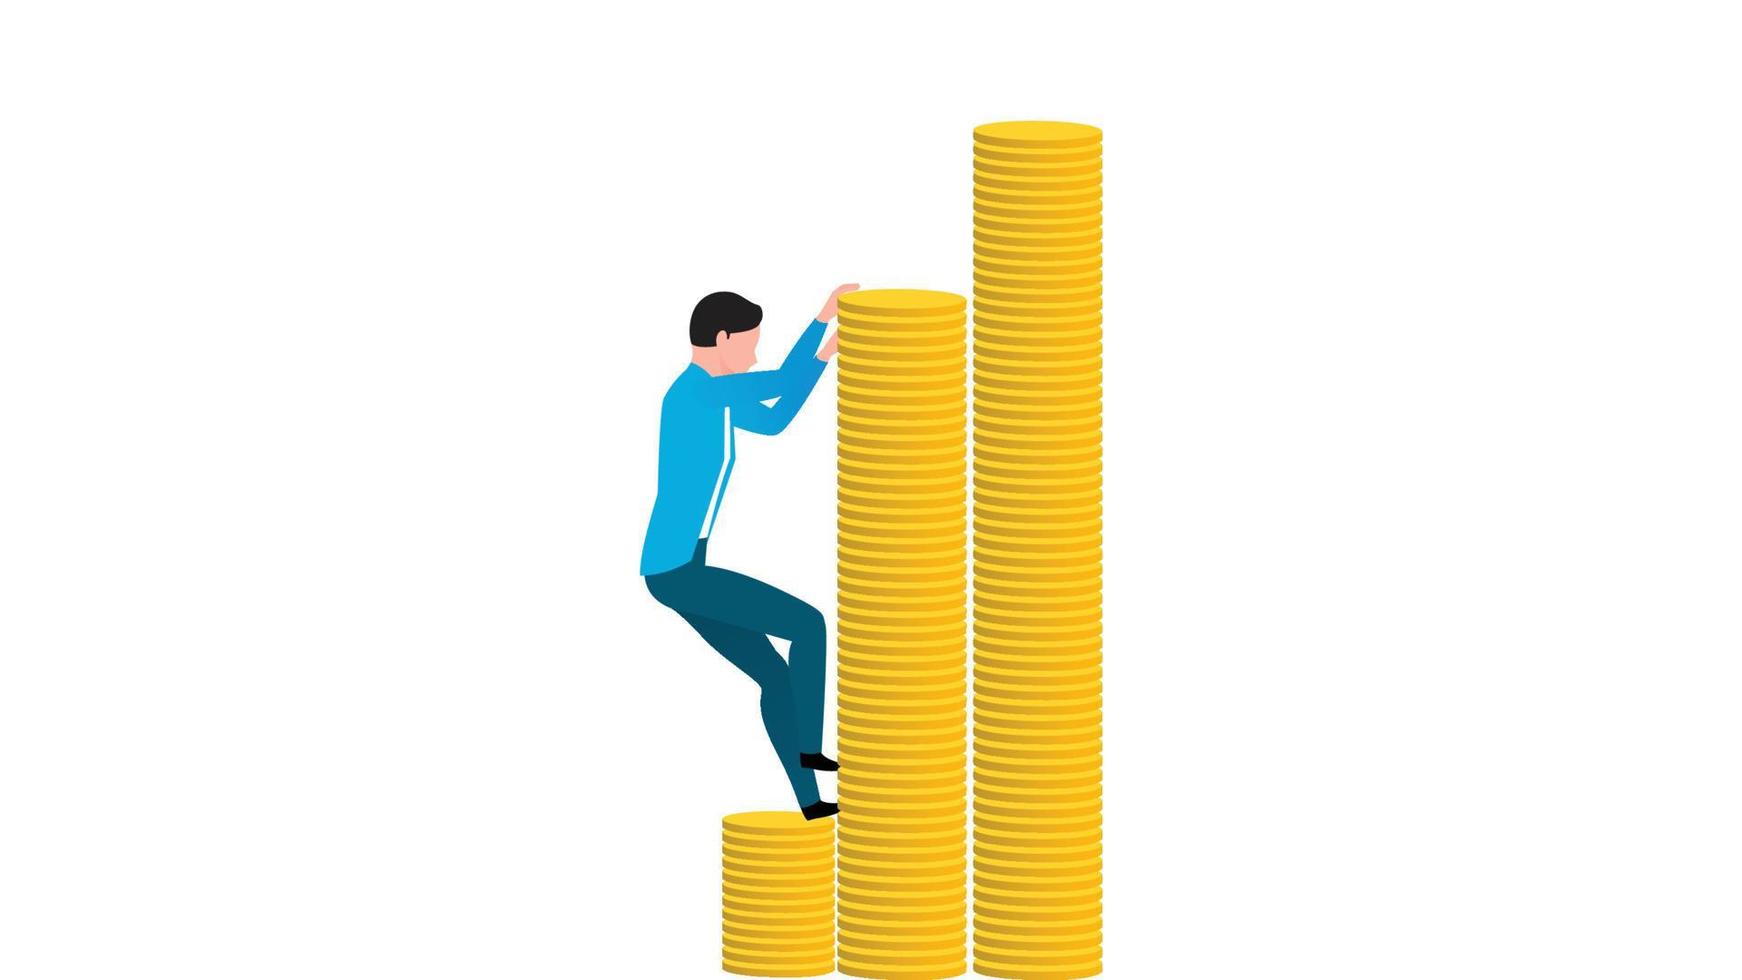 uomo che si arrampica su una pila di monete, illustrazione vettoriale di carattere aziendale piatto su sfondo bianco.